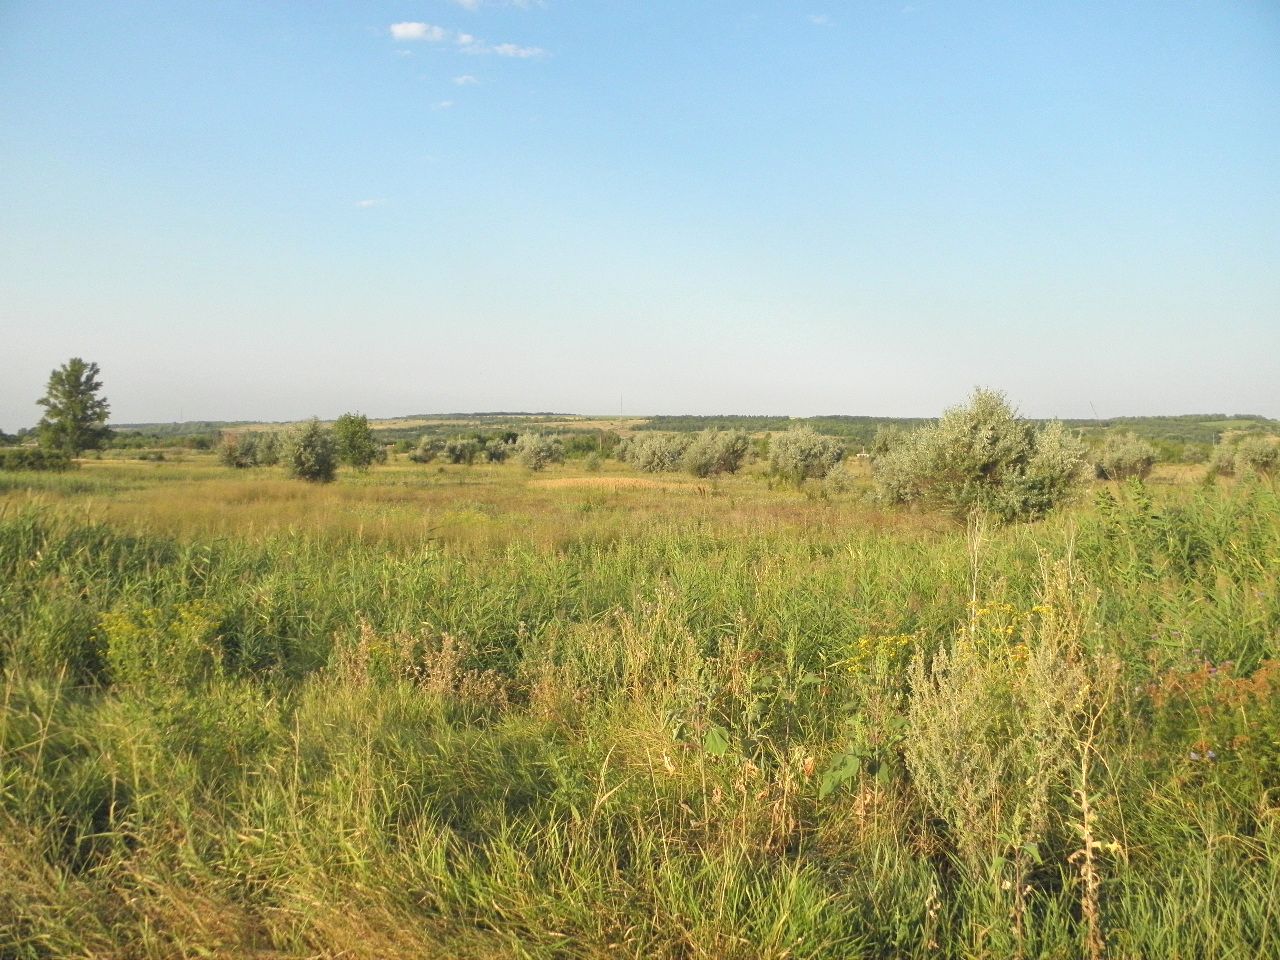 Село Стрельцовка, изображение ландшафта.